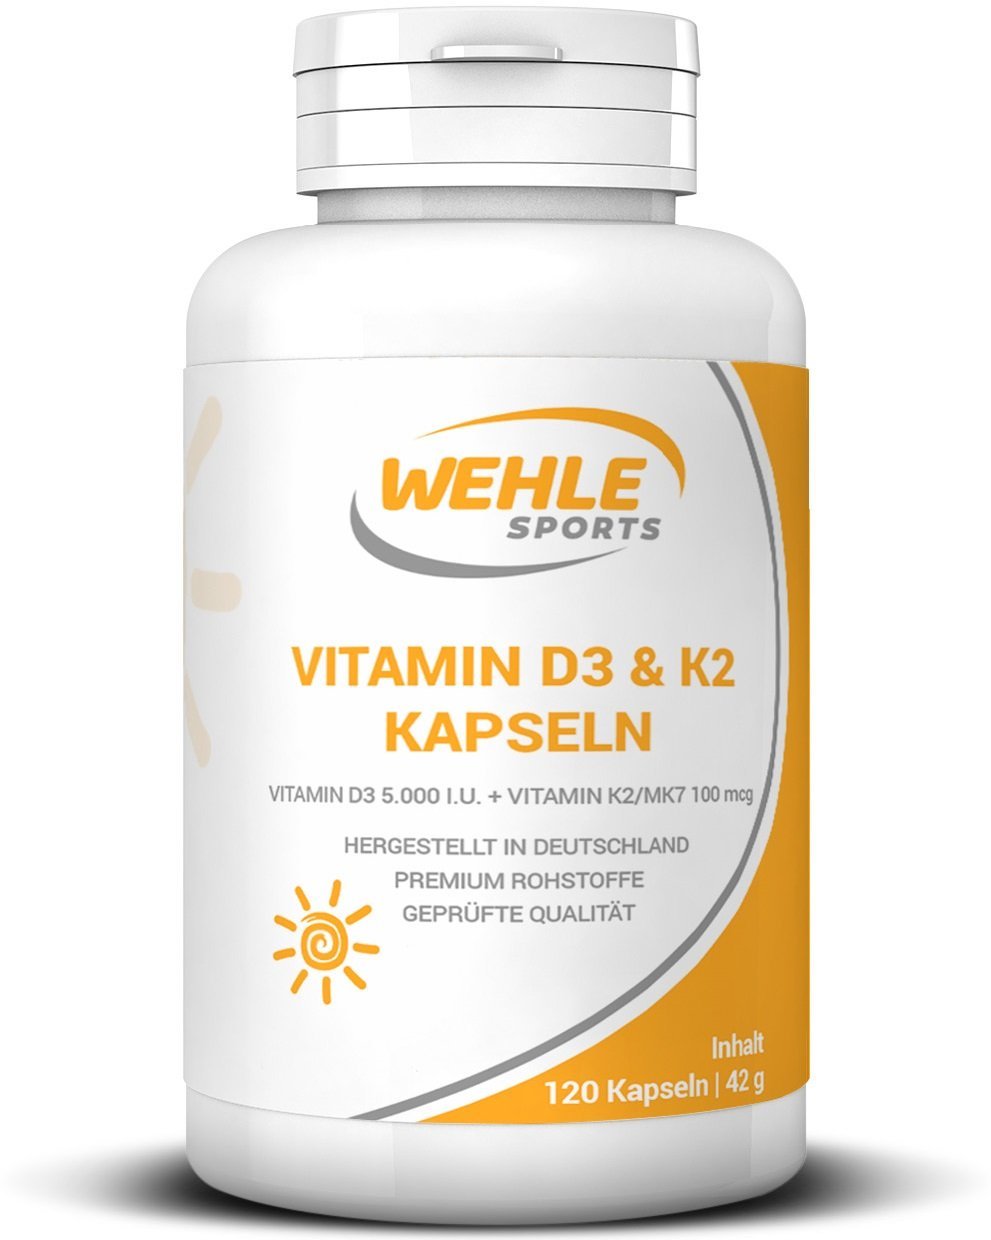 Vitamin D3 & K2 Kapseln